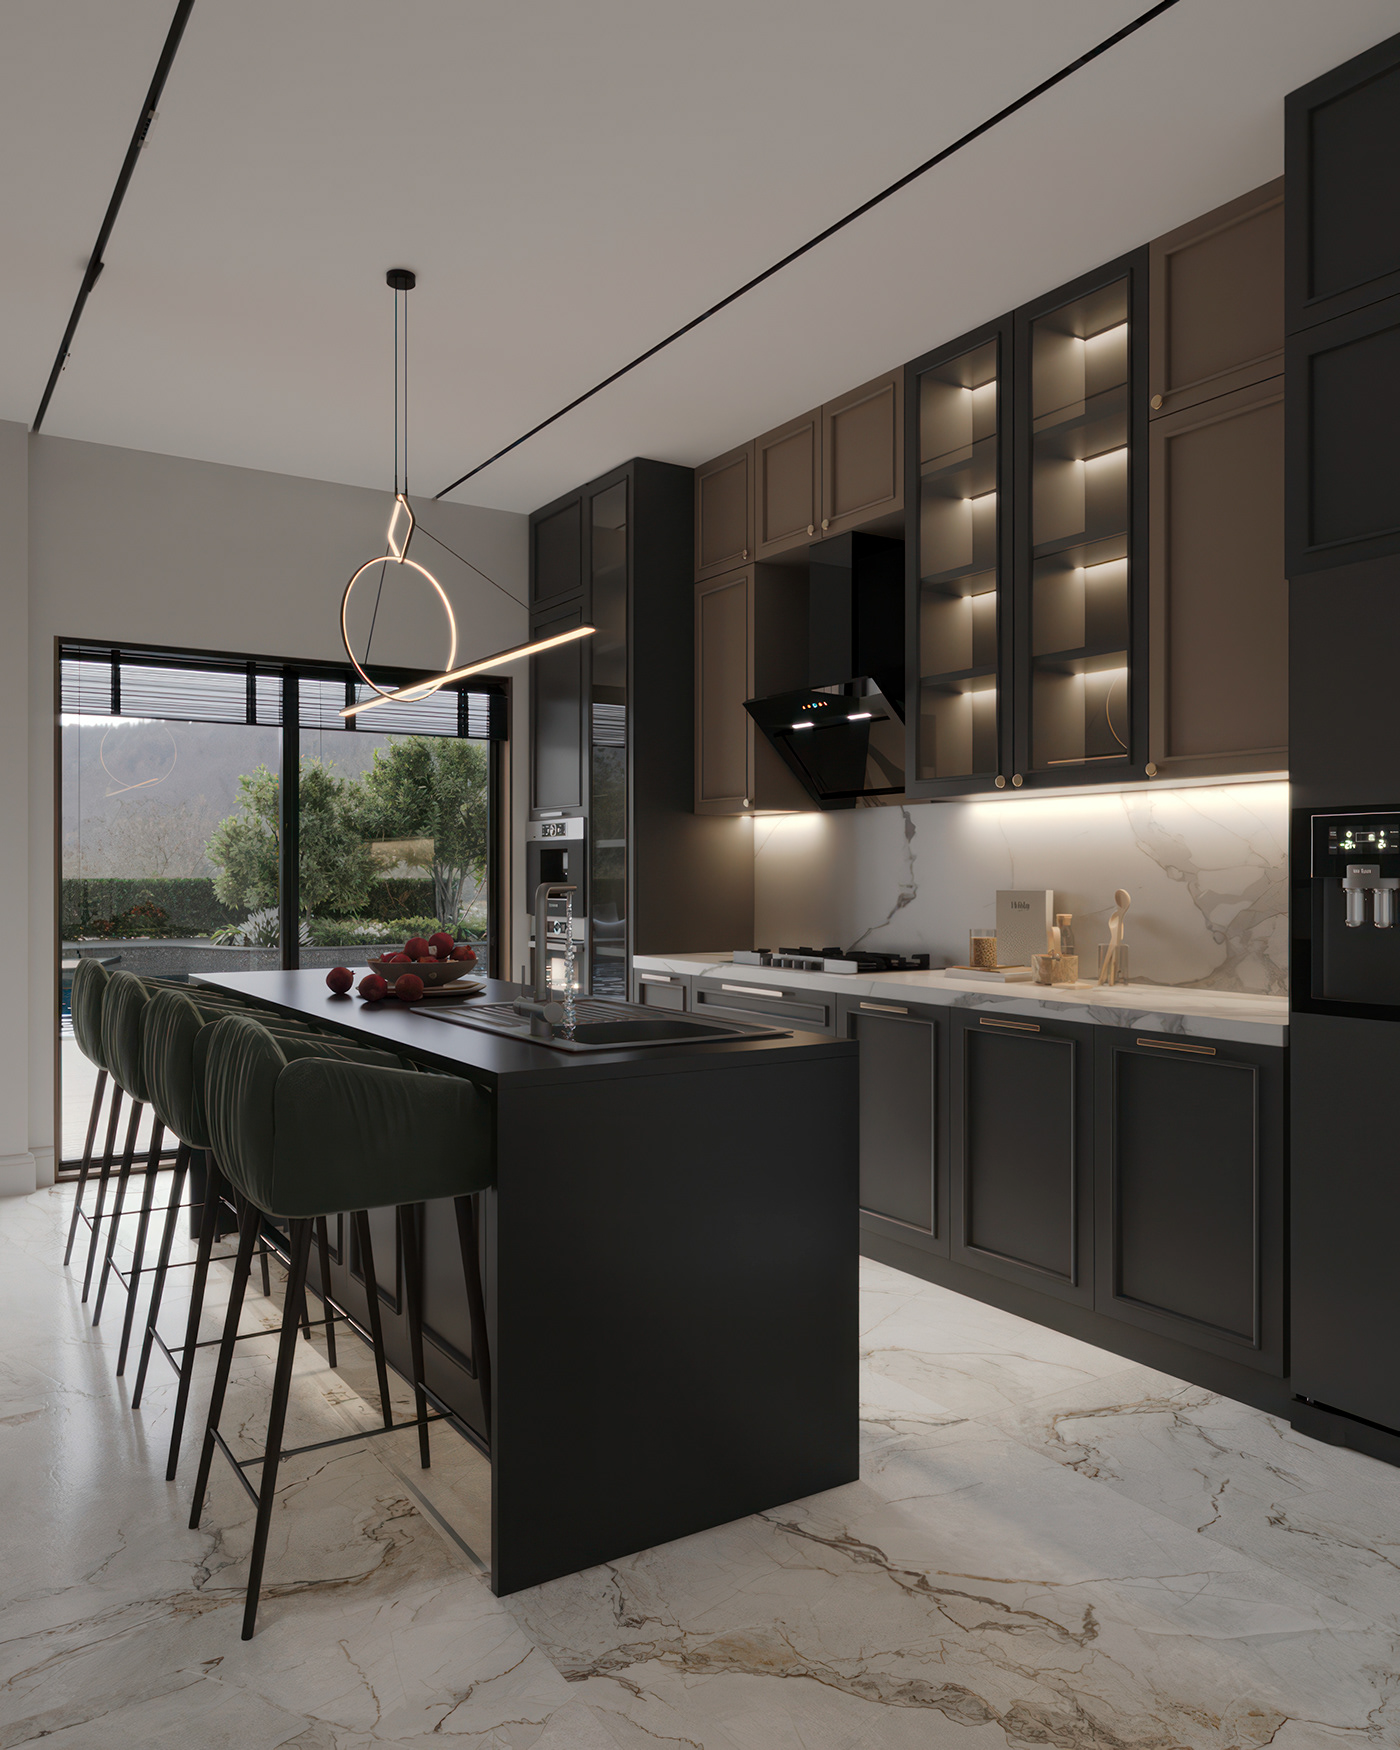 kitchen kitchen design visualization 3ds max corona modern interior design  CGI archviz 3D